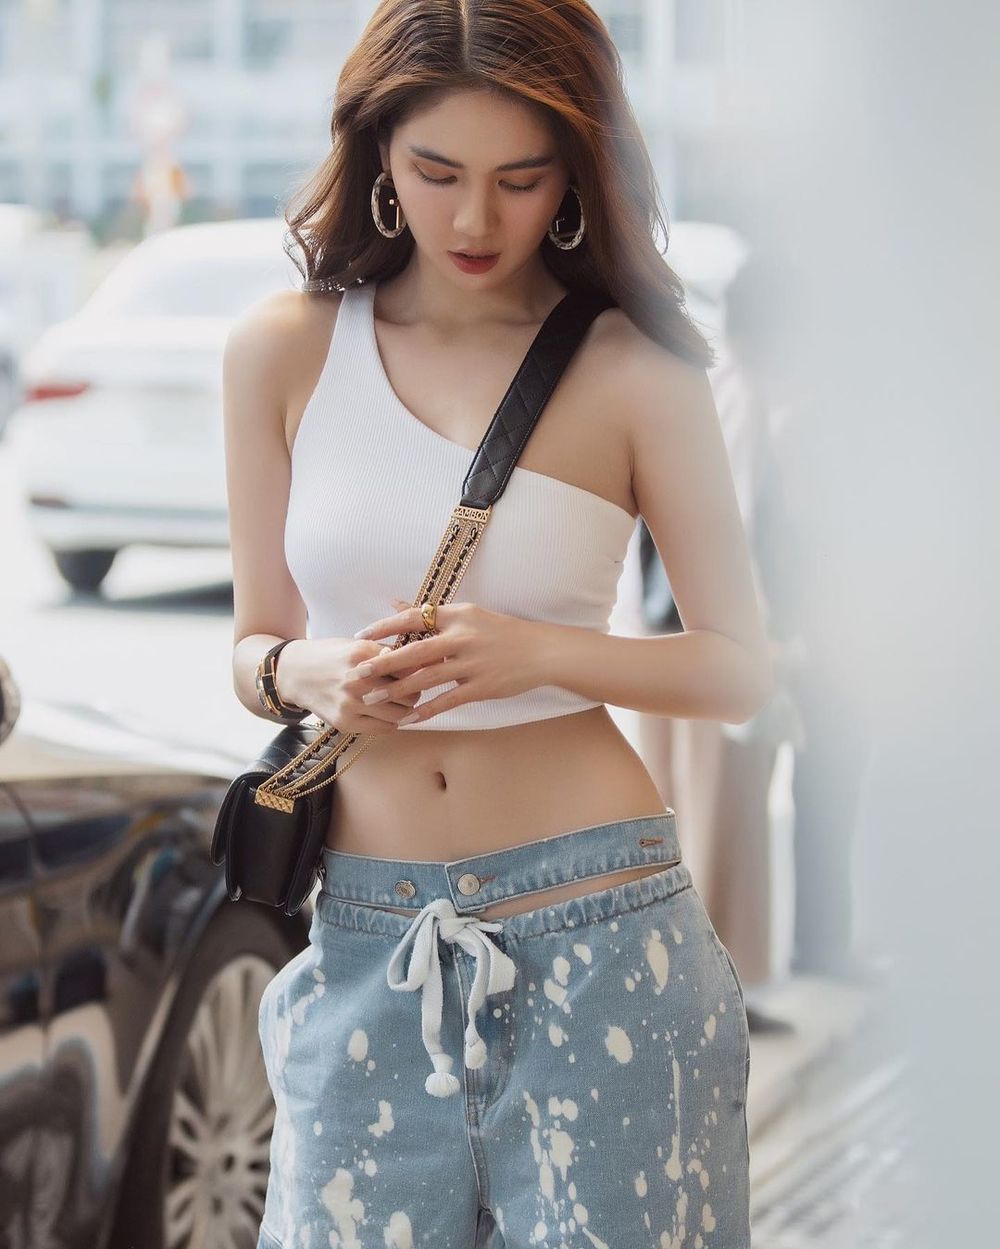 
Ngọc Trinh luôn là cô nàng thời trang và có những bức ảnh xuống phố chất lượng nhất. (Ảnh: Instagram nhân vật)